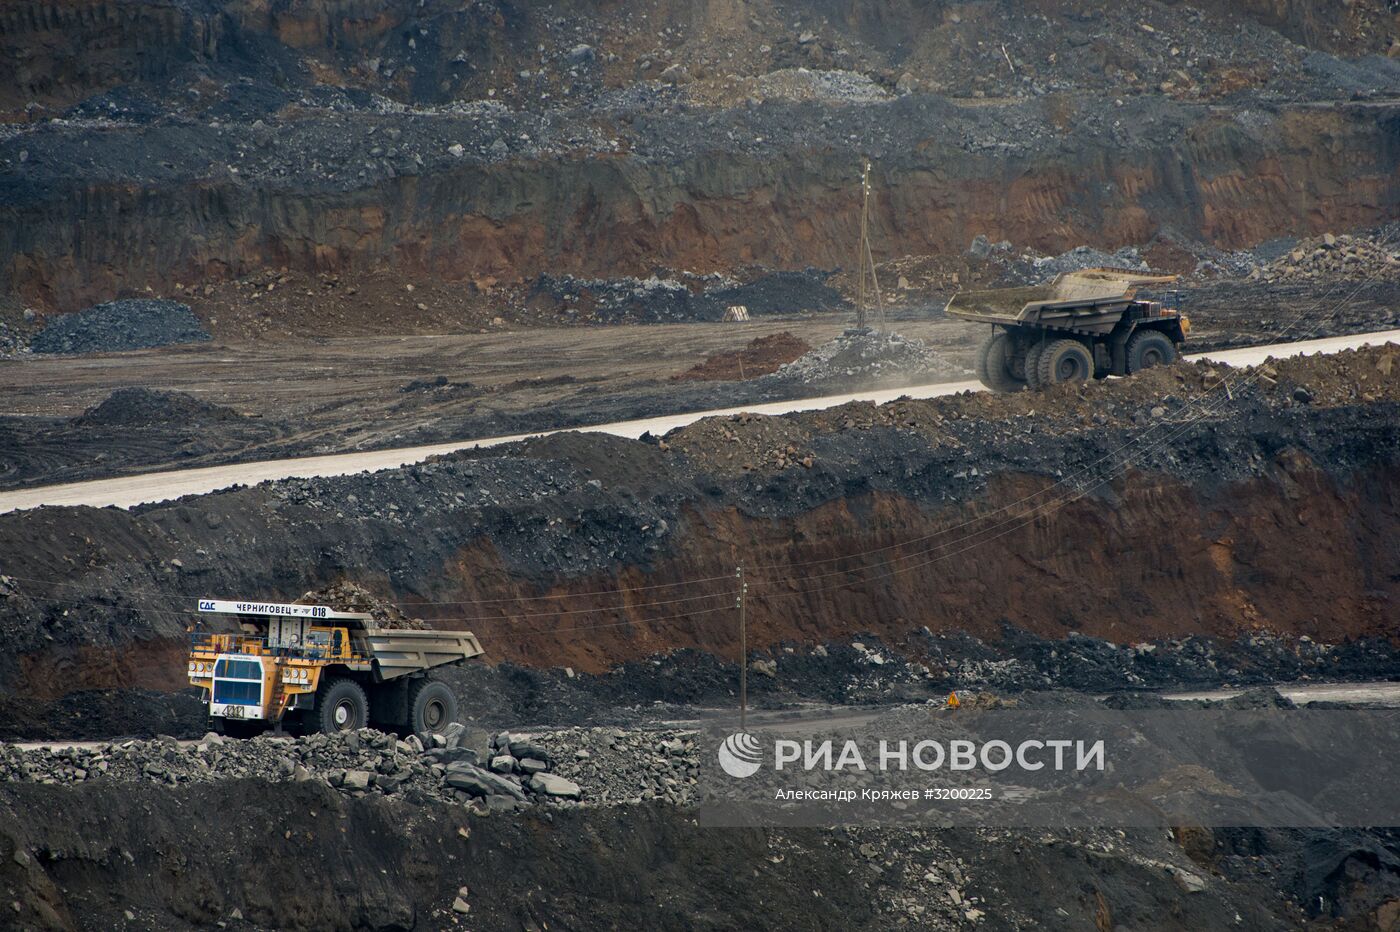 Угольный разрез "Черниговский" в Кемеровской области